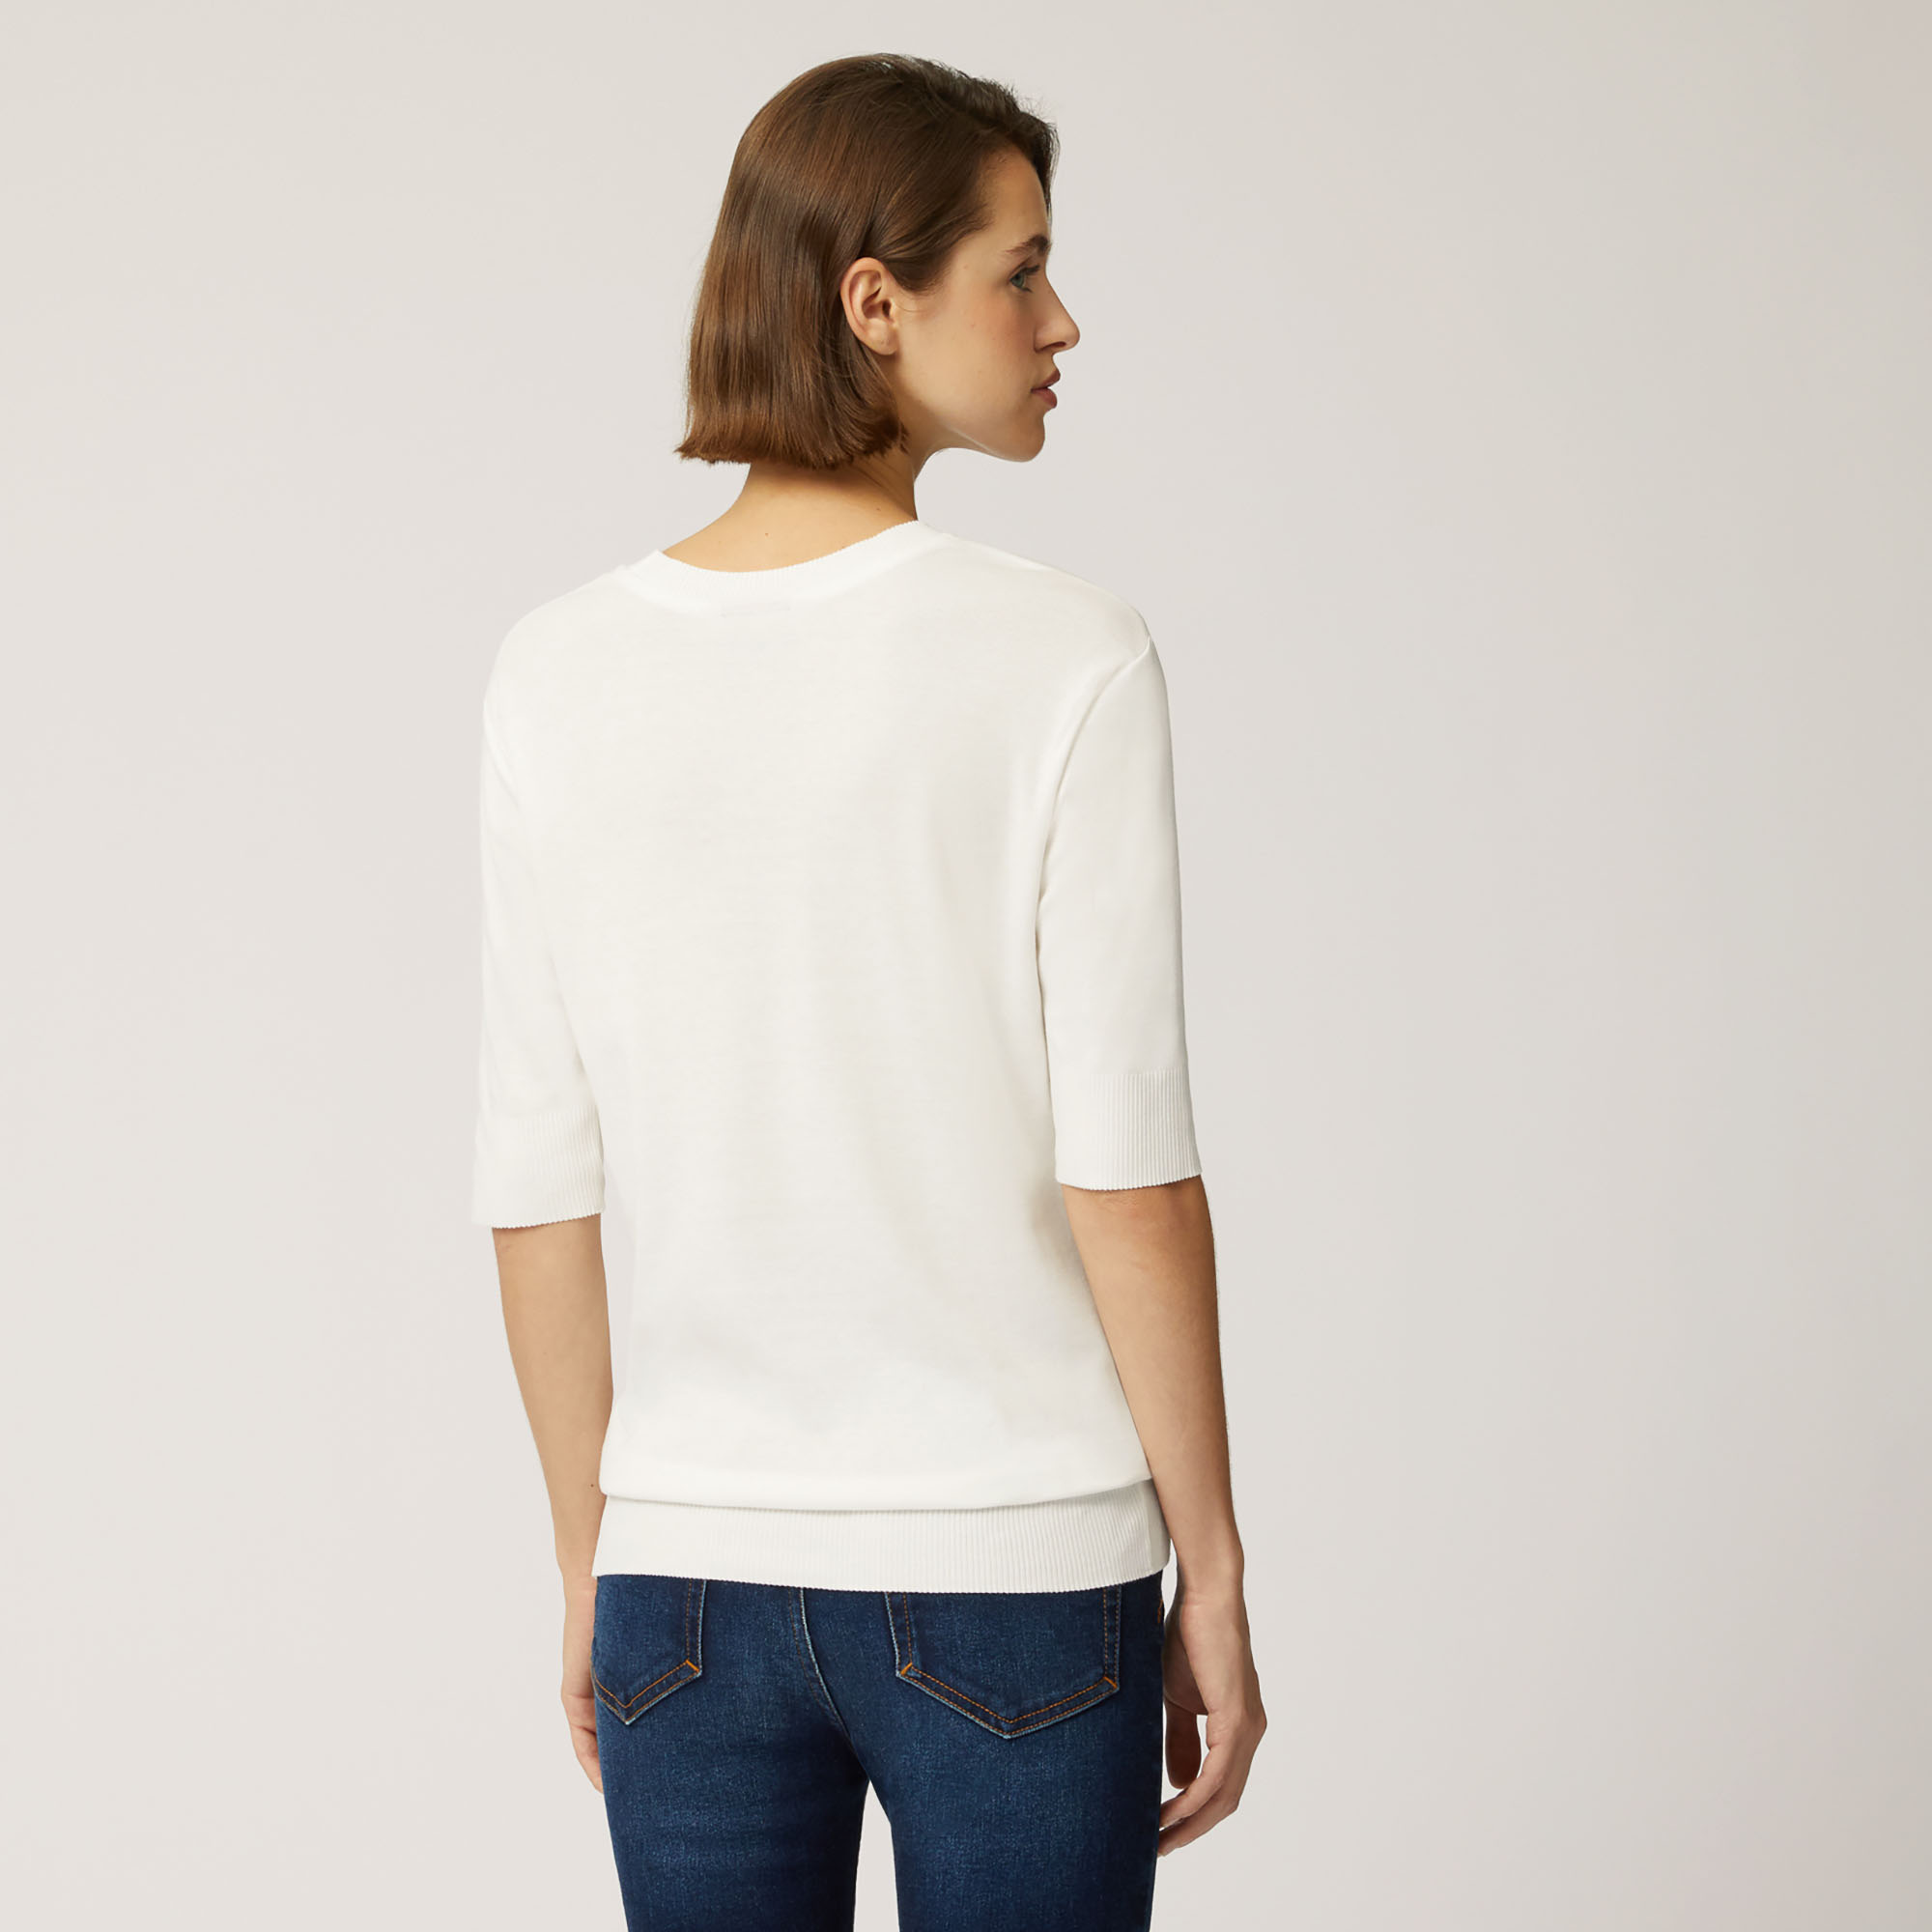 T-Shirt In Cotone E Modal Con Maniche A Tre Quarti, Bianco, large image number 1